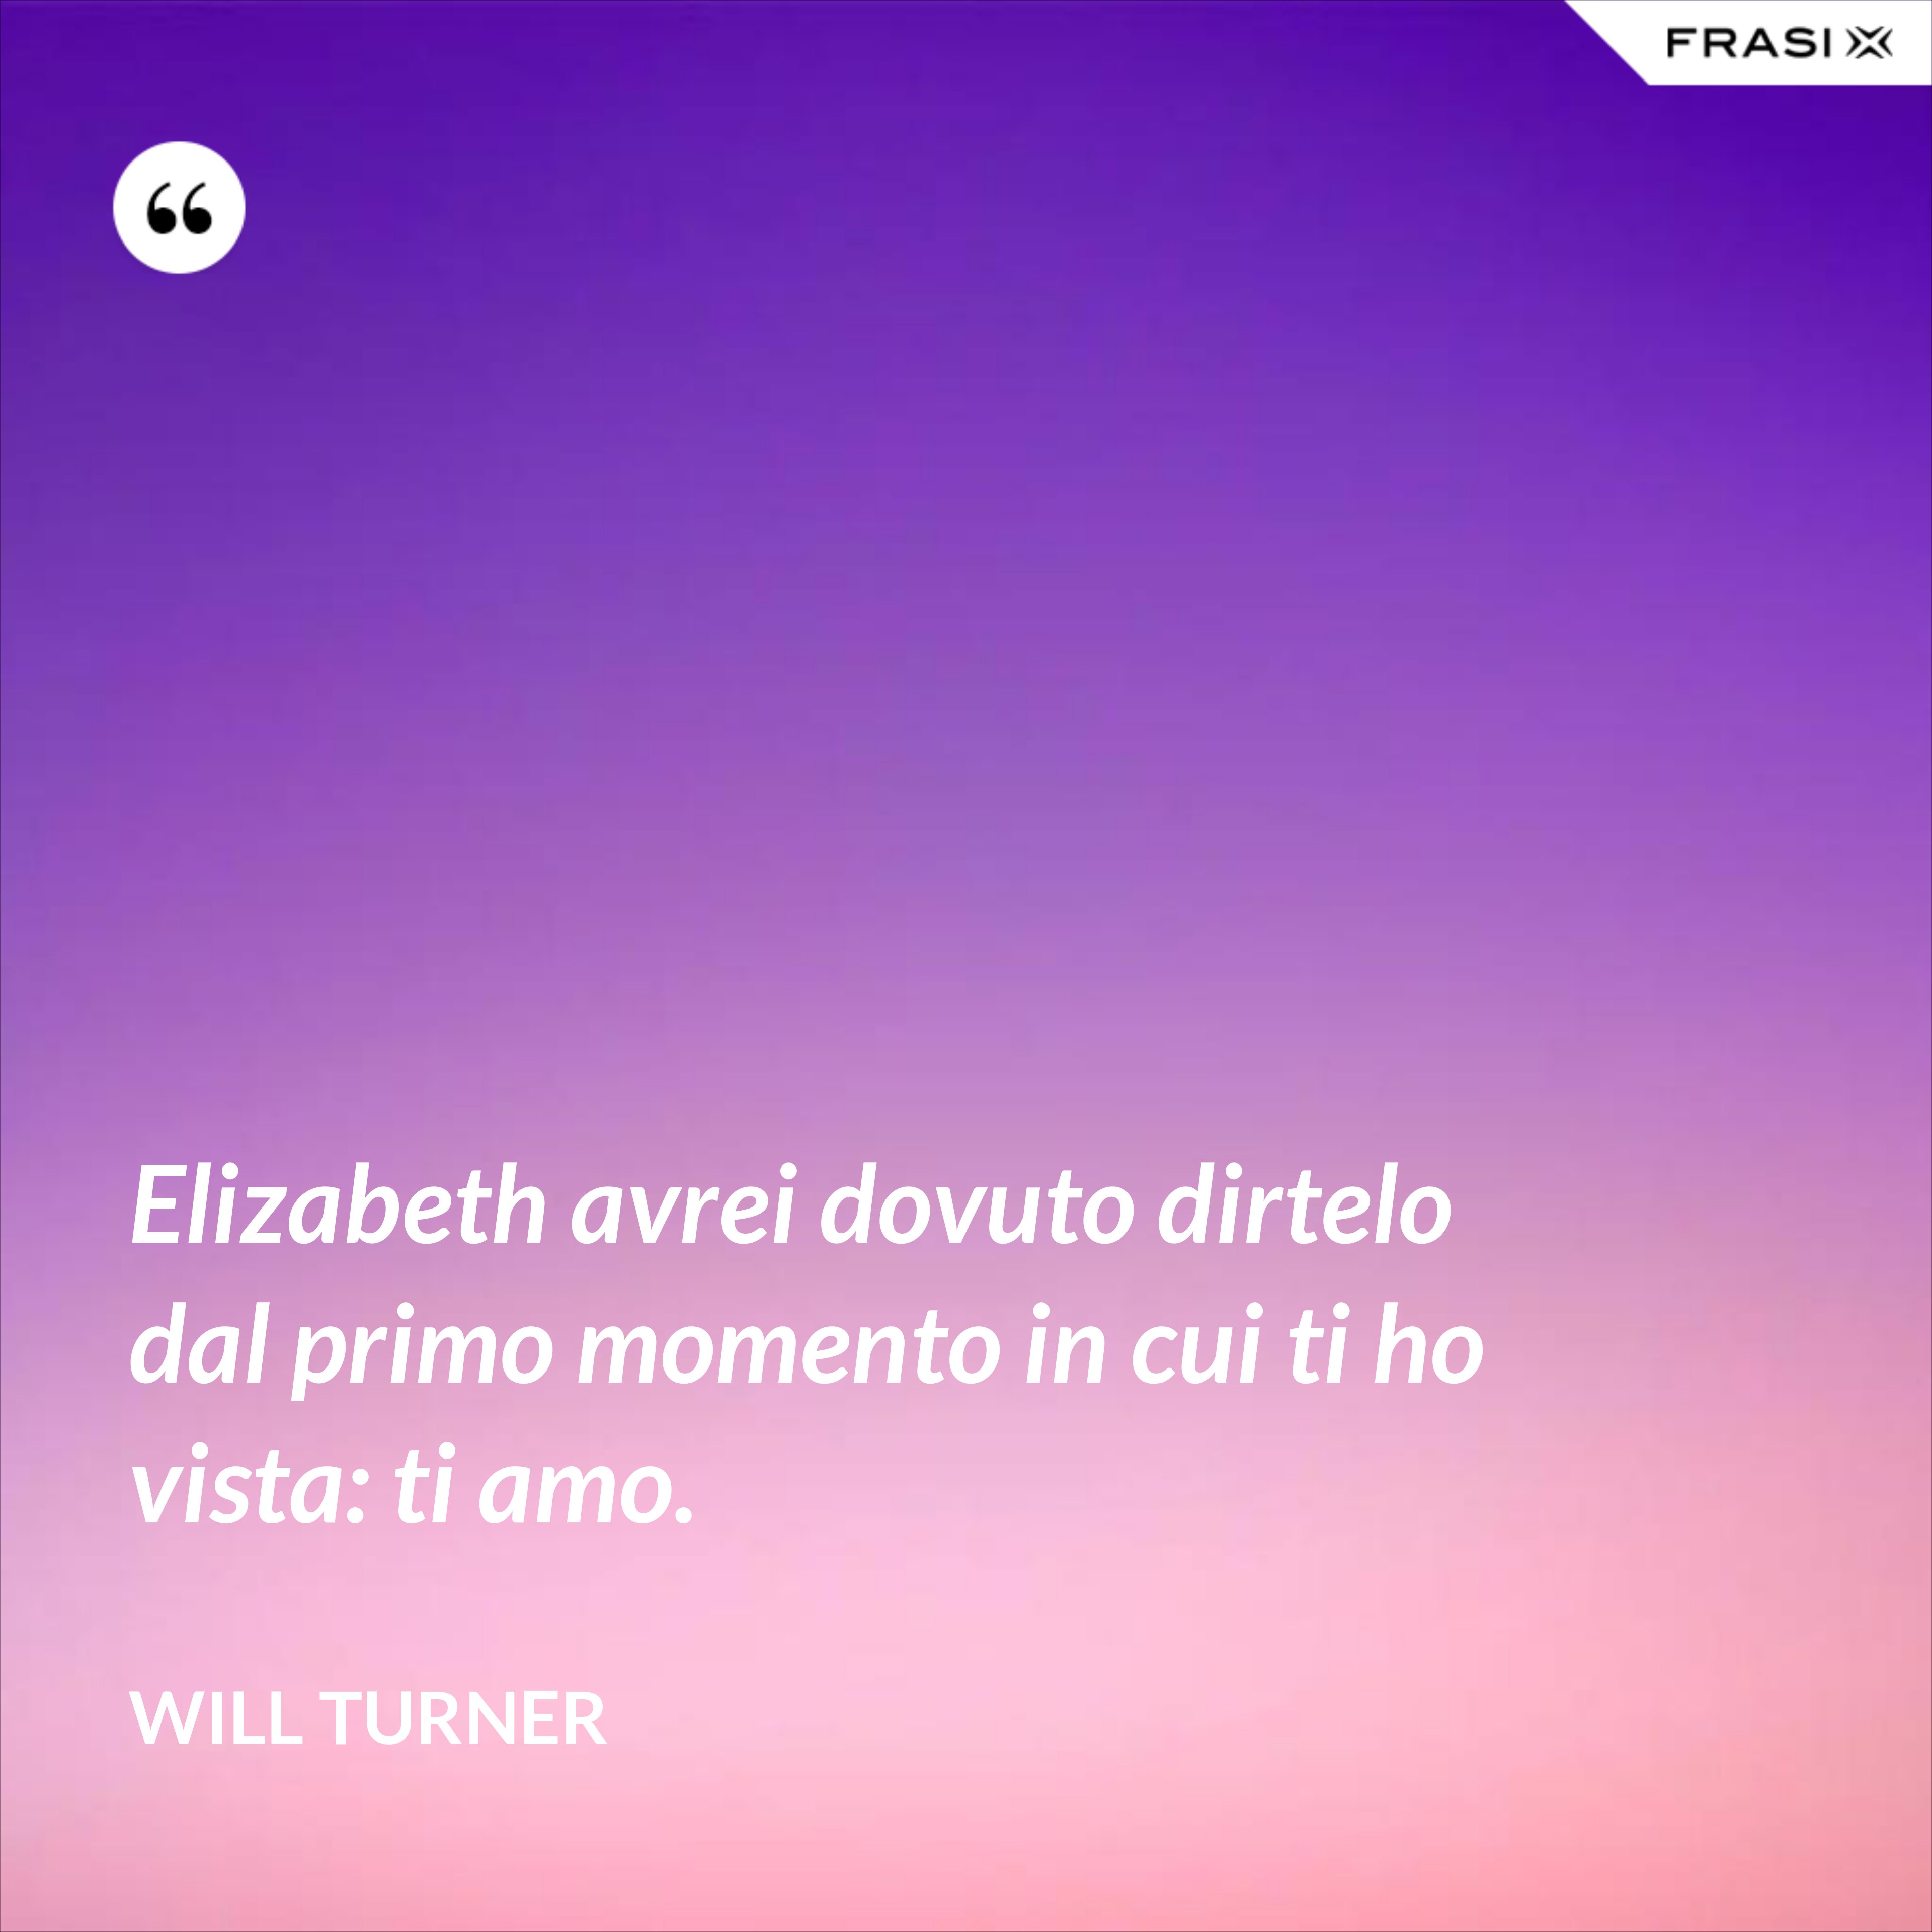 Elizabeth avrei dovuto dirtelo dal primo momento in cui ti ho vista: ti amo. - Will Turner